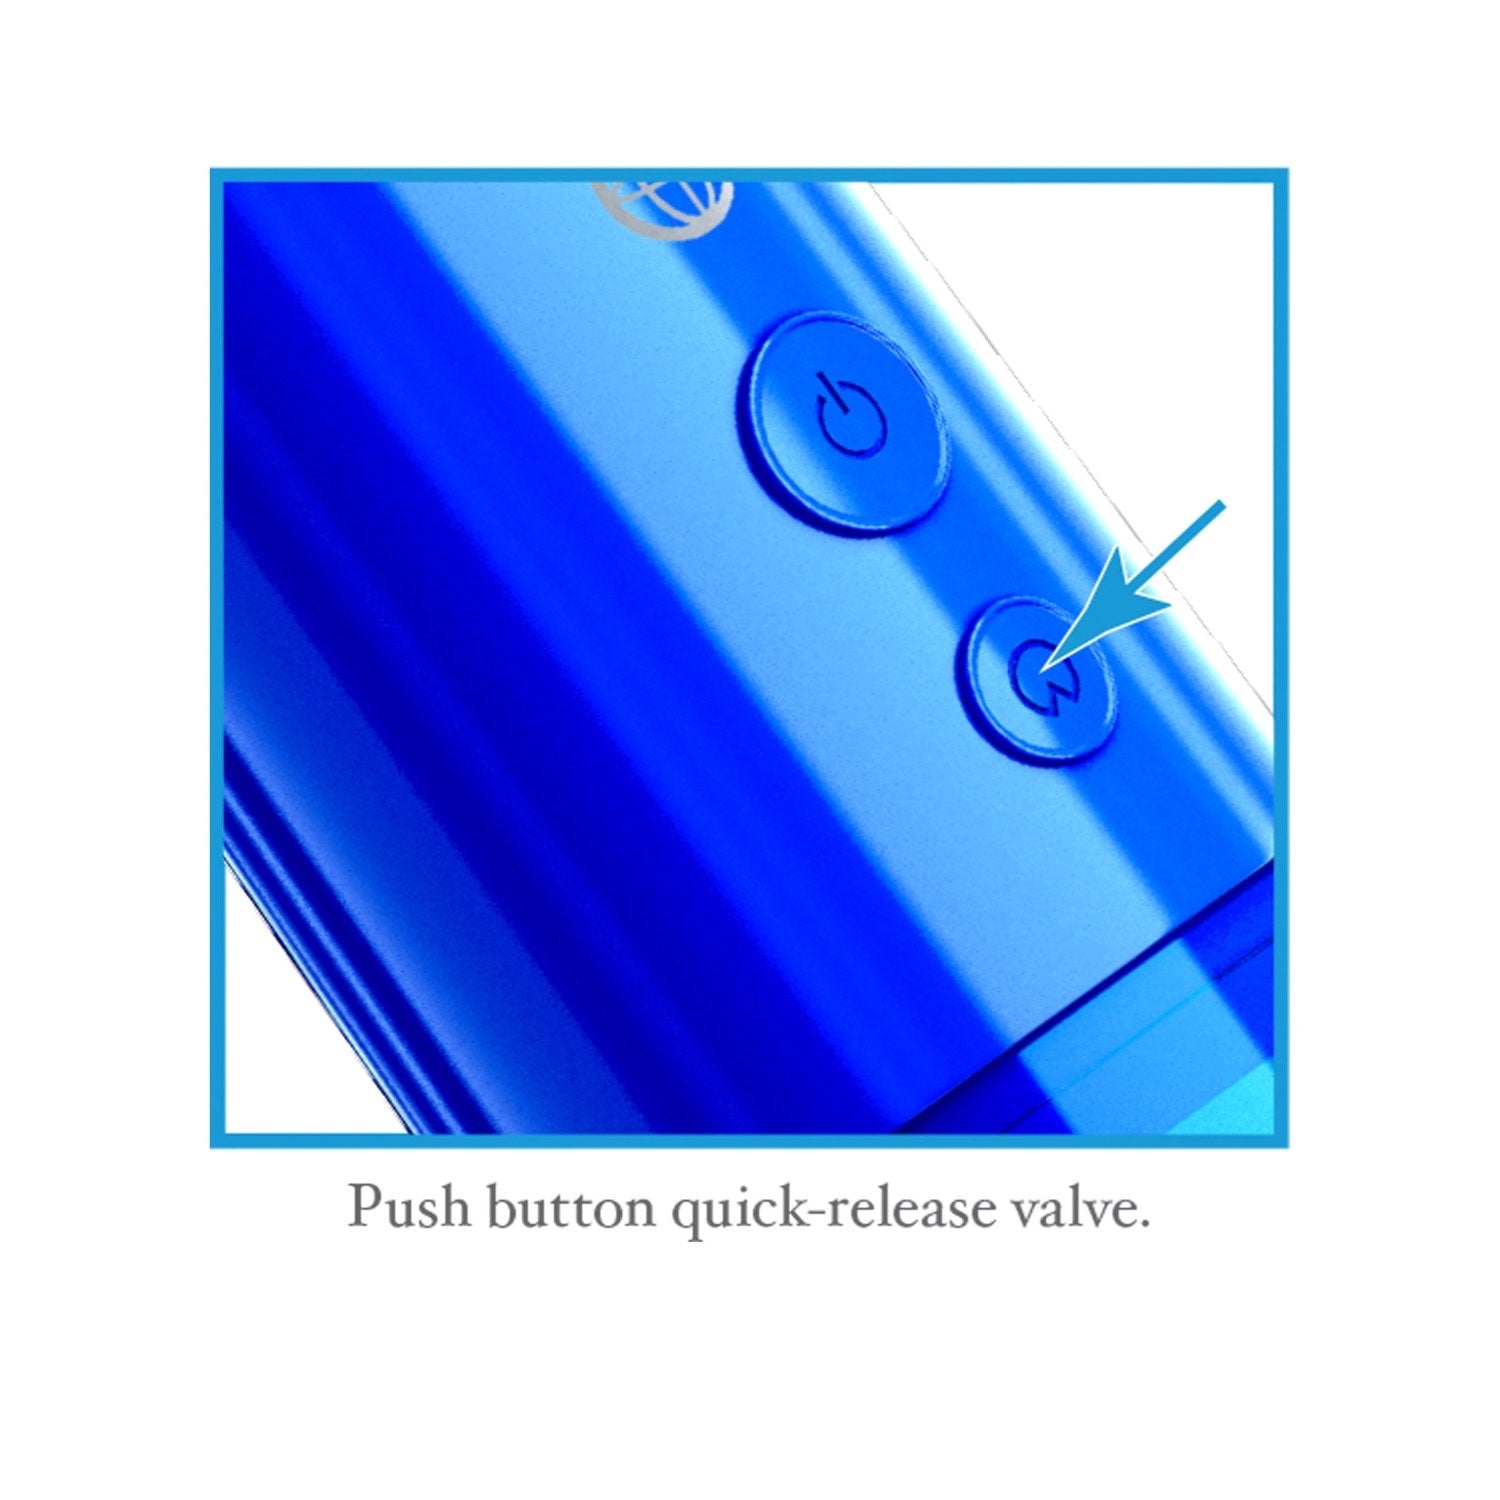 经典 Auto-Vac 动力泵 - 蓝色动力阴茎泵 by Pipedream